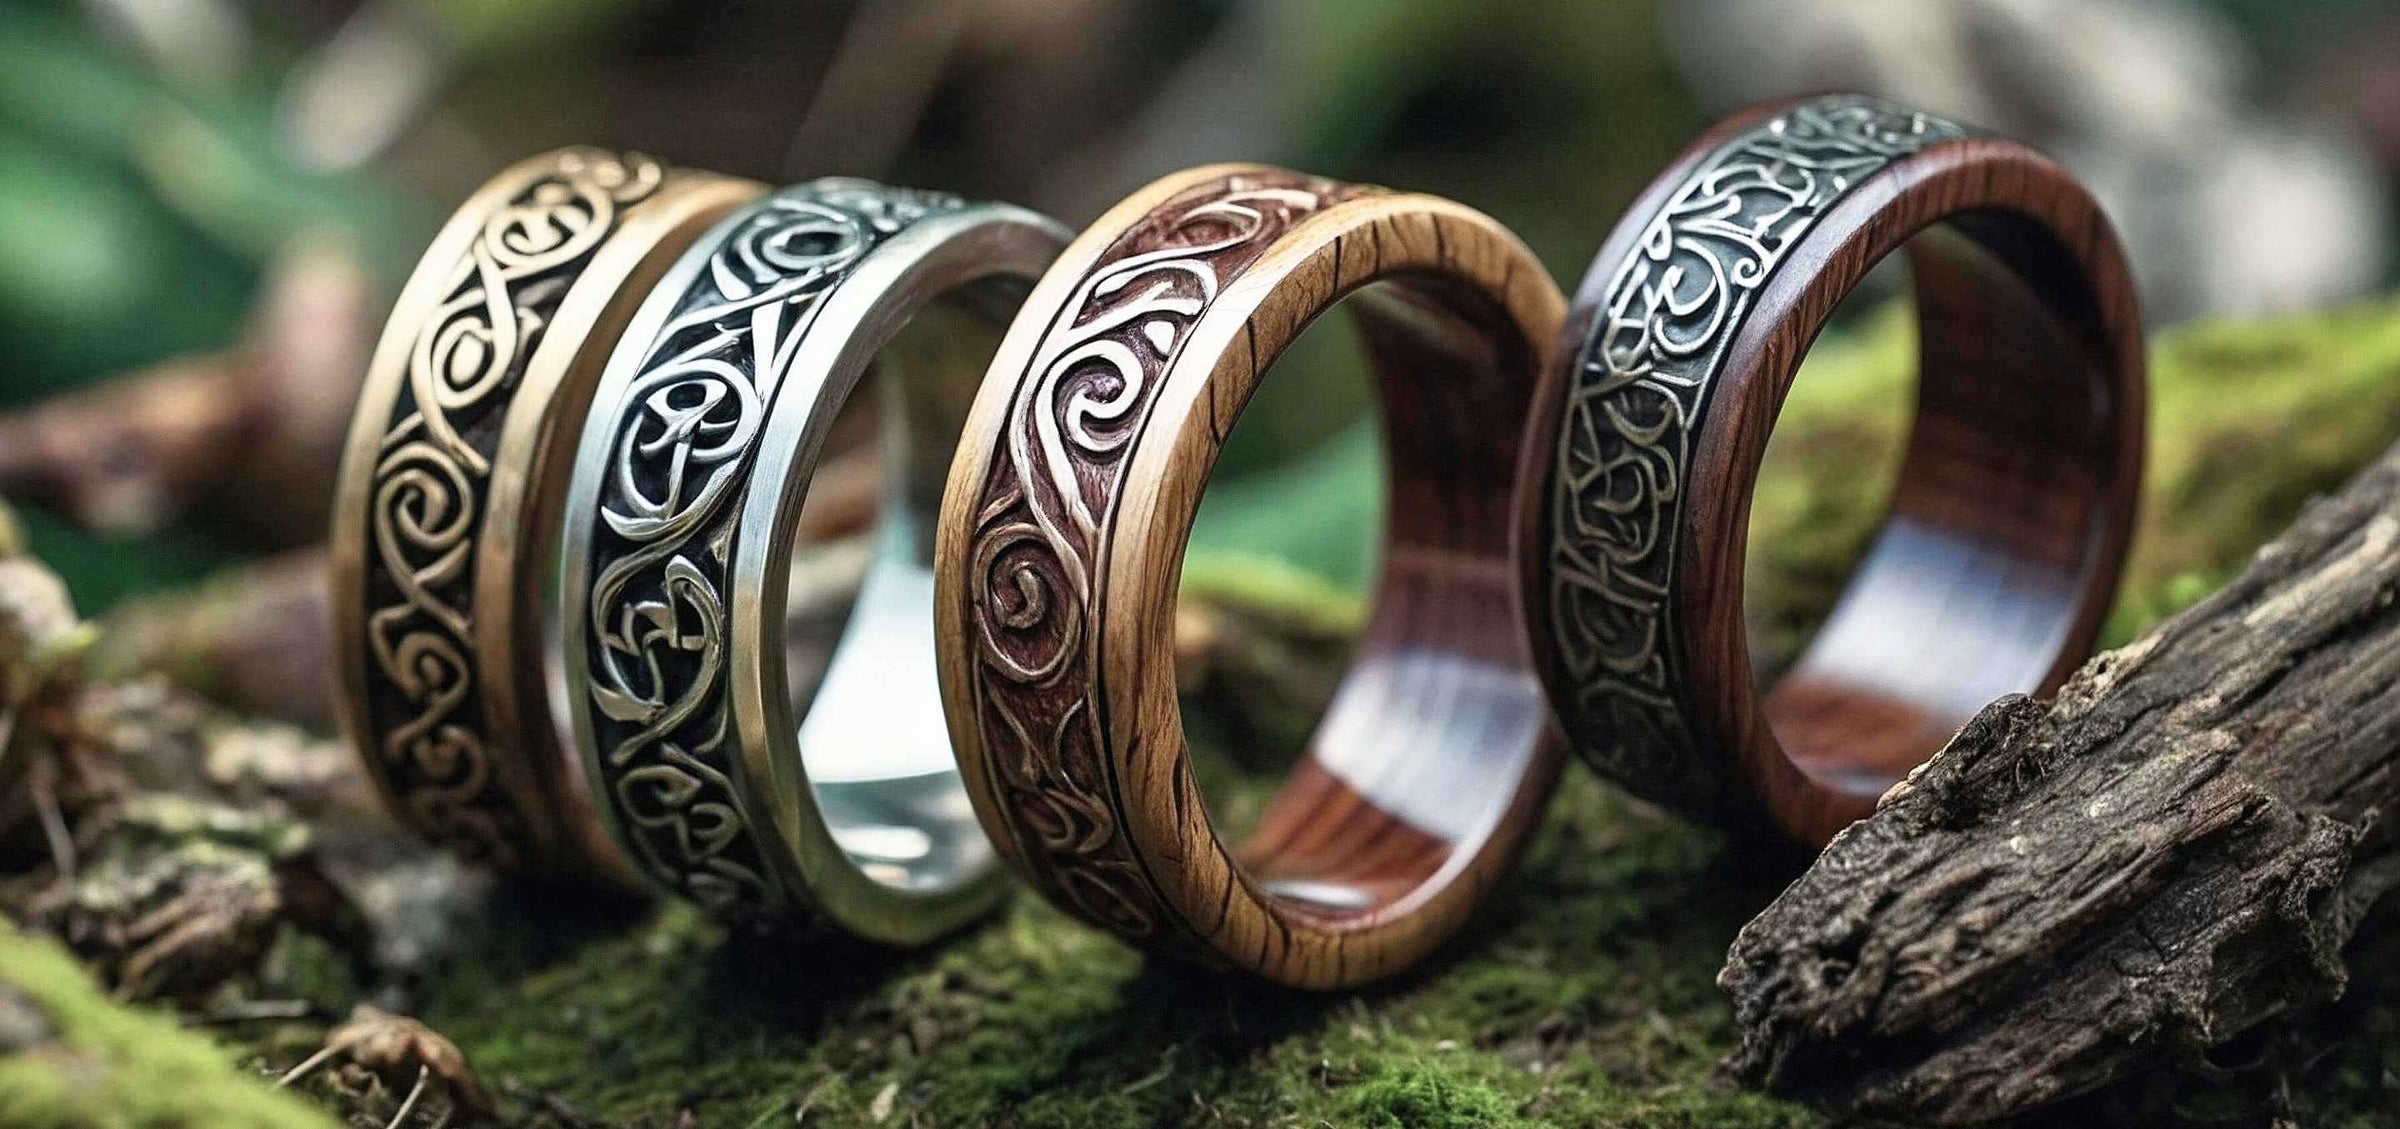 Kategoriebild Ringe, Vier mythologische Ringe aus Holz und Metall mit keltischen Mustern auf einem moosbedeckten Waldhintergrund.